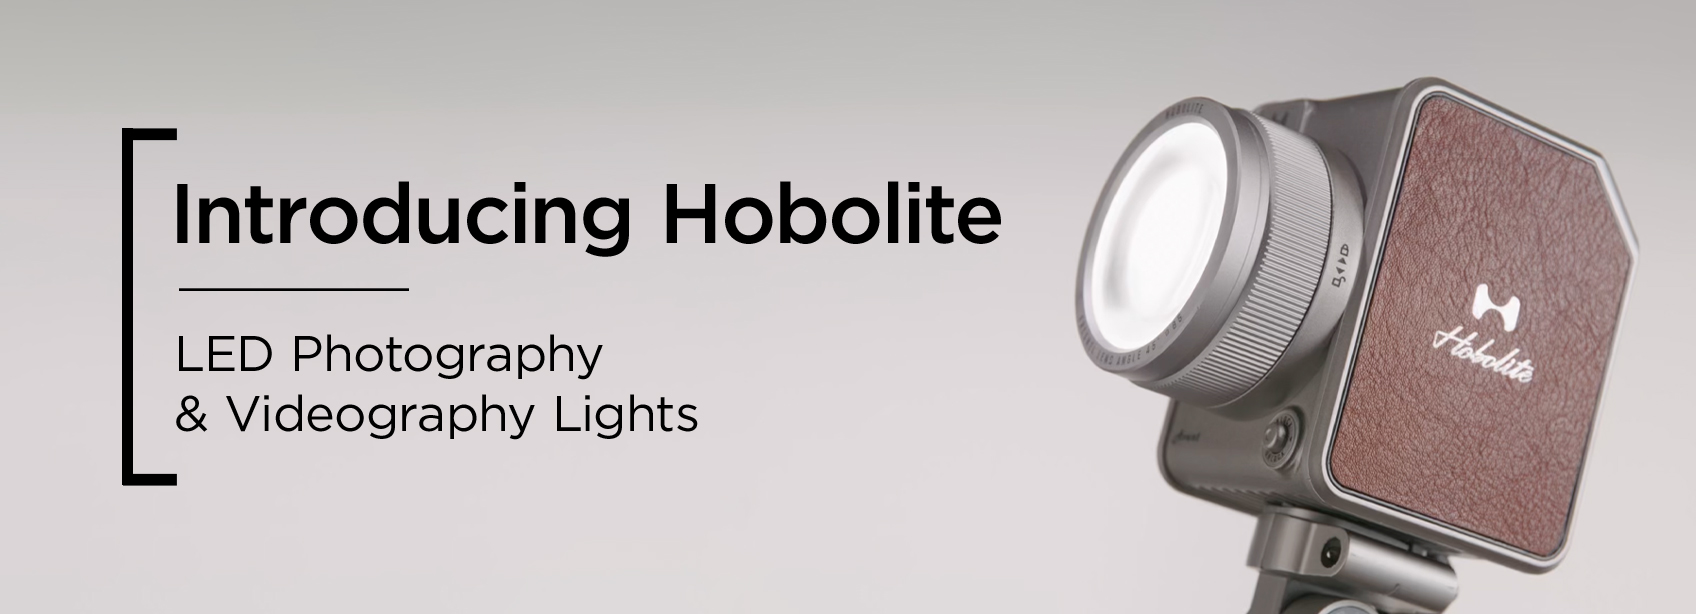 wex-Introducing-Hobolite-H-090323.jpg